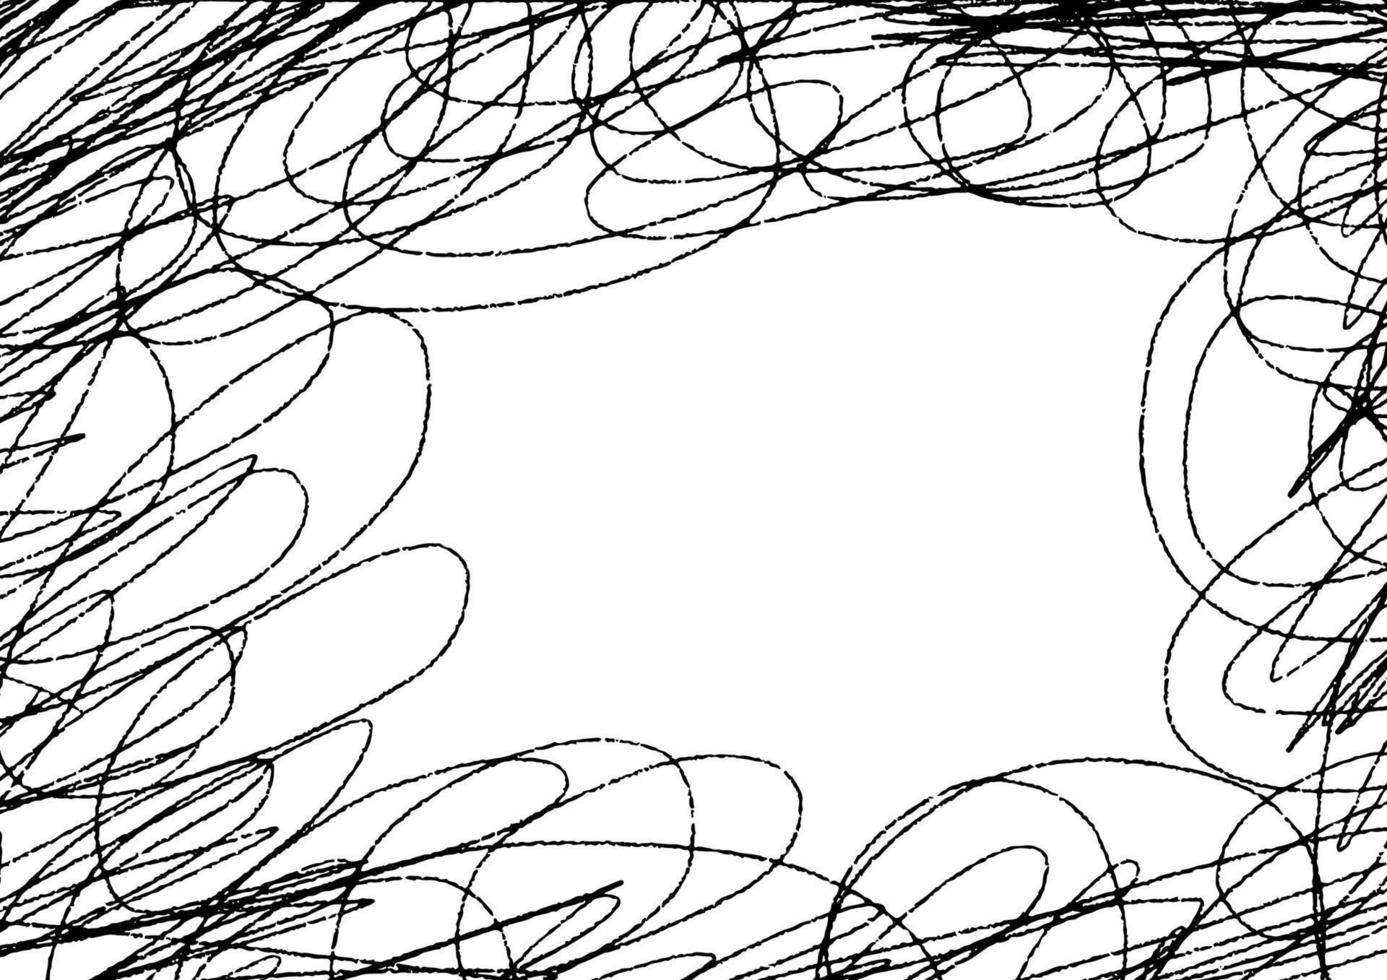 abstrakt svart penna skiss på bakgrund vektor